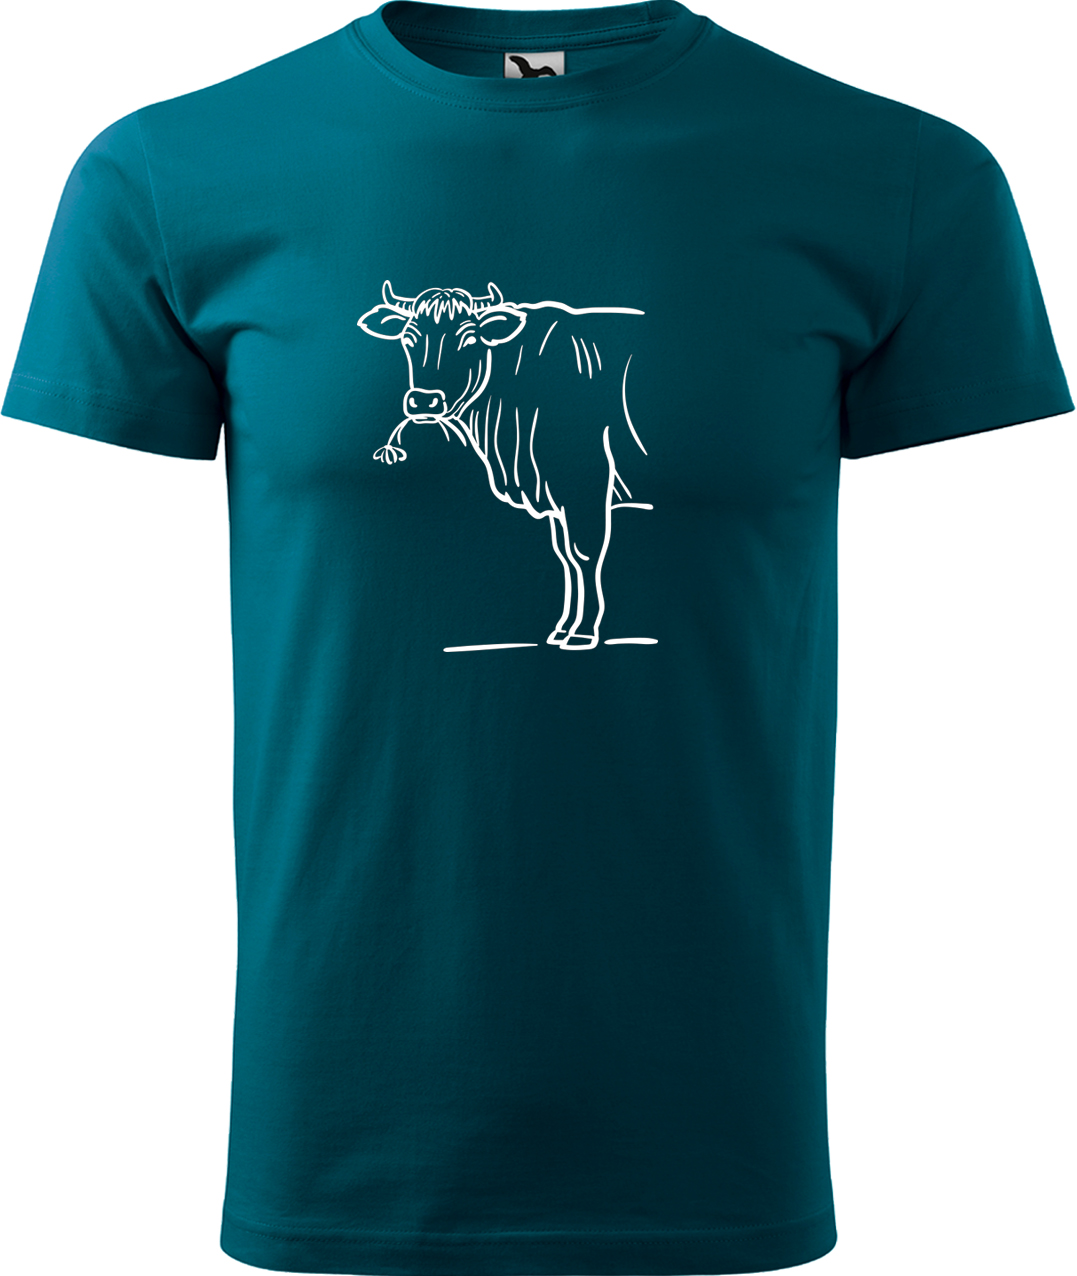 Pánské tričko s krávou - Býk Velikost: L, Barva: Petrolejová (93), Střih: pánský